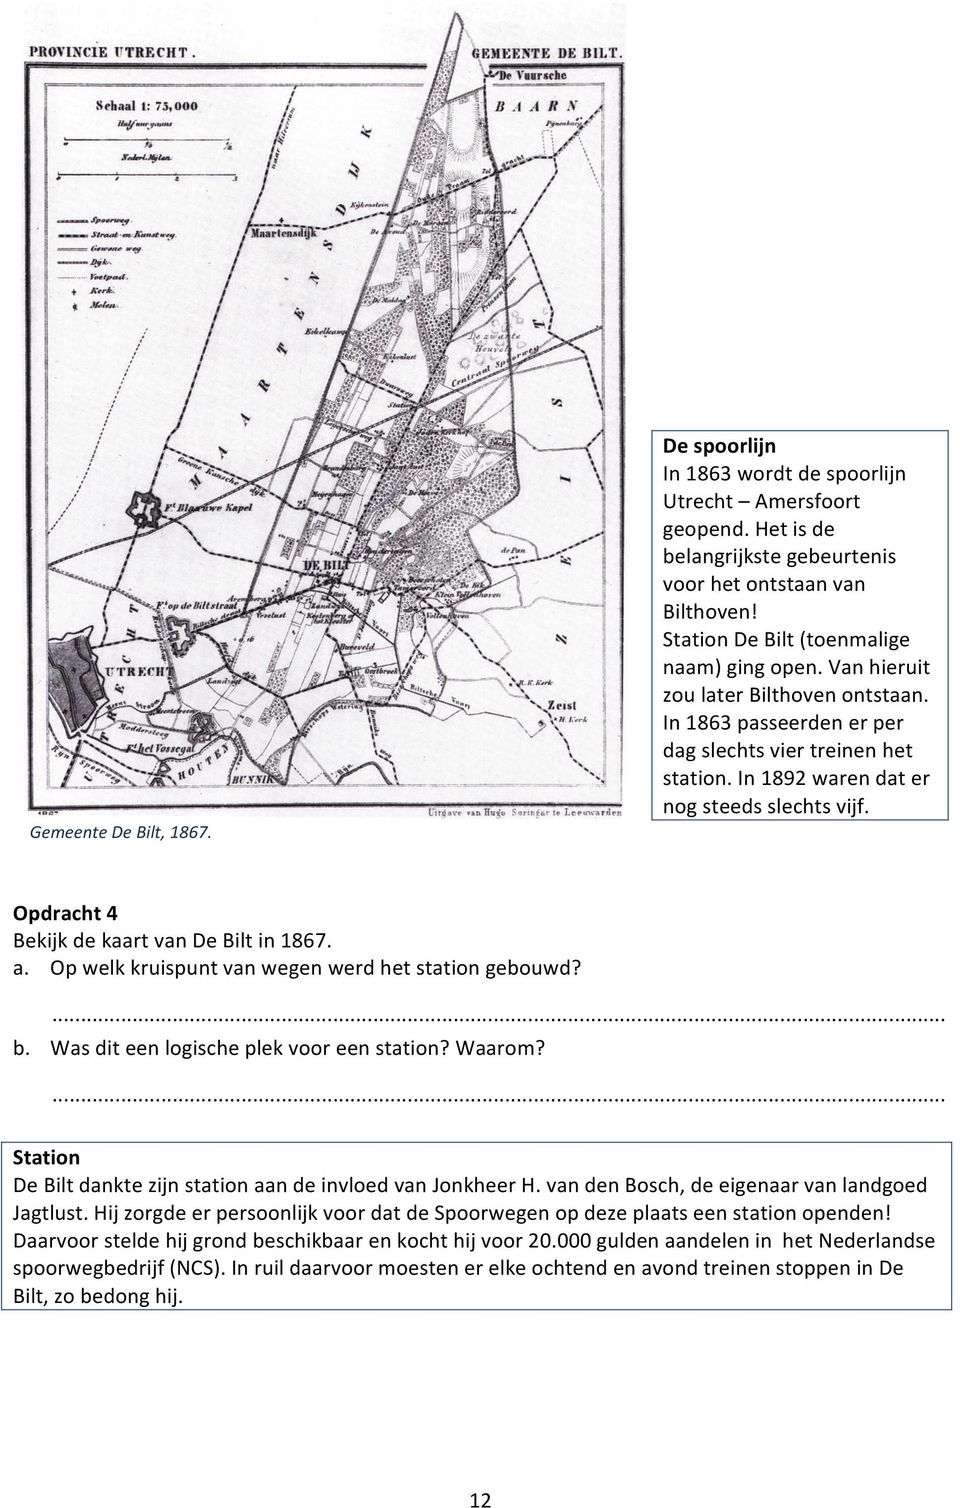 Opdracht 4 Bekijk de kaart van De Bilt in 1867. a. Op welk kruispunt van wegen werd het station gebouwd? b. Was dit een logische plek voor een station? Waarom?